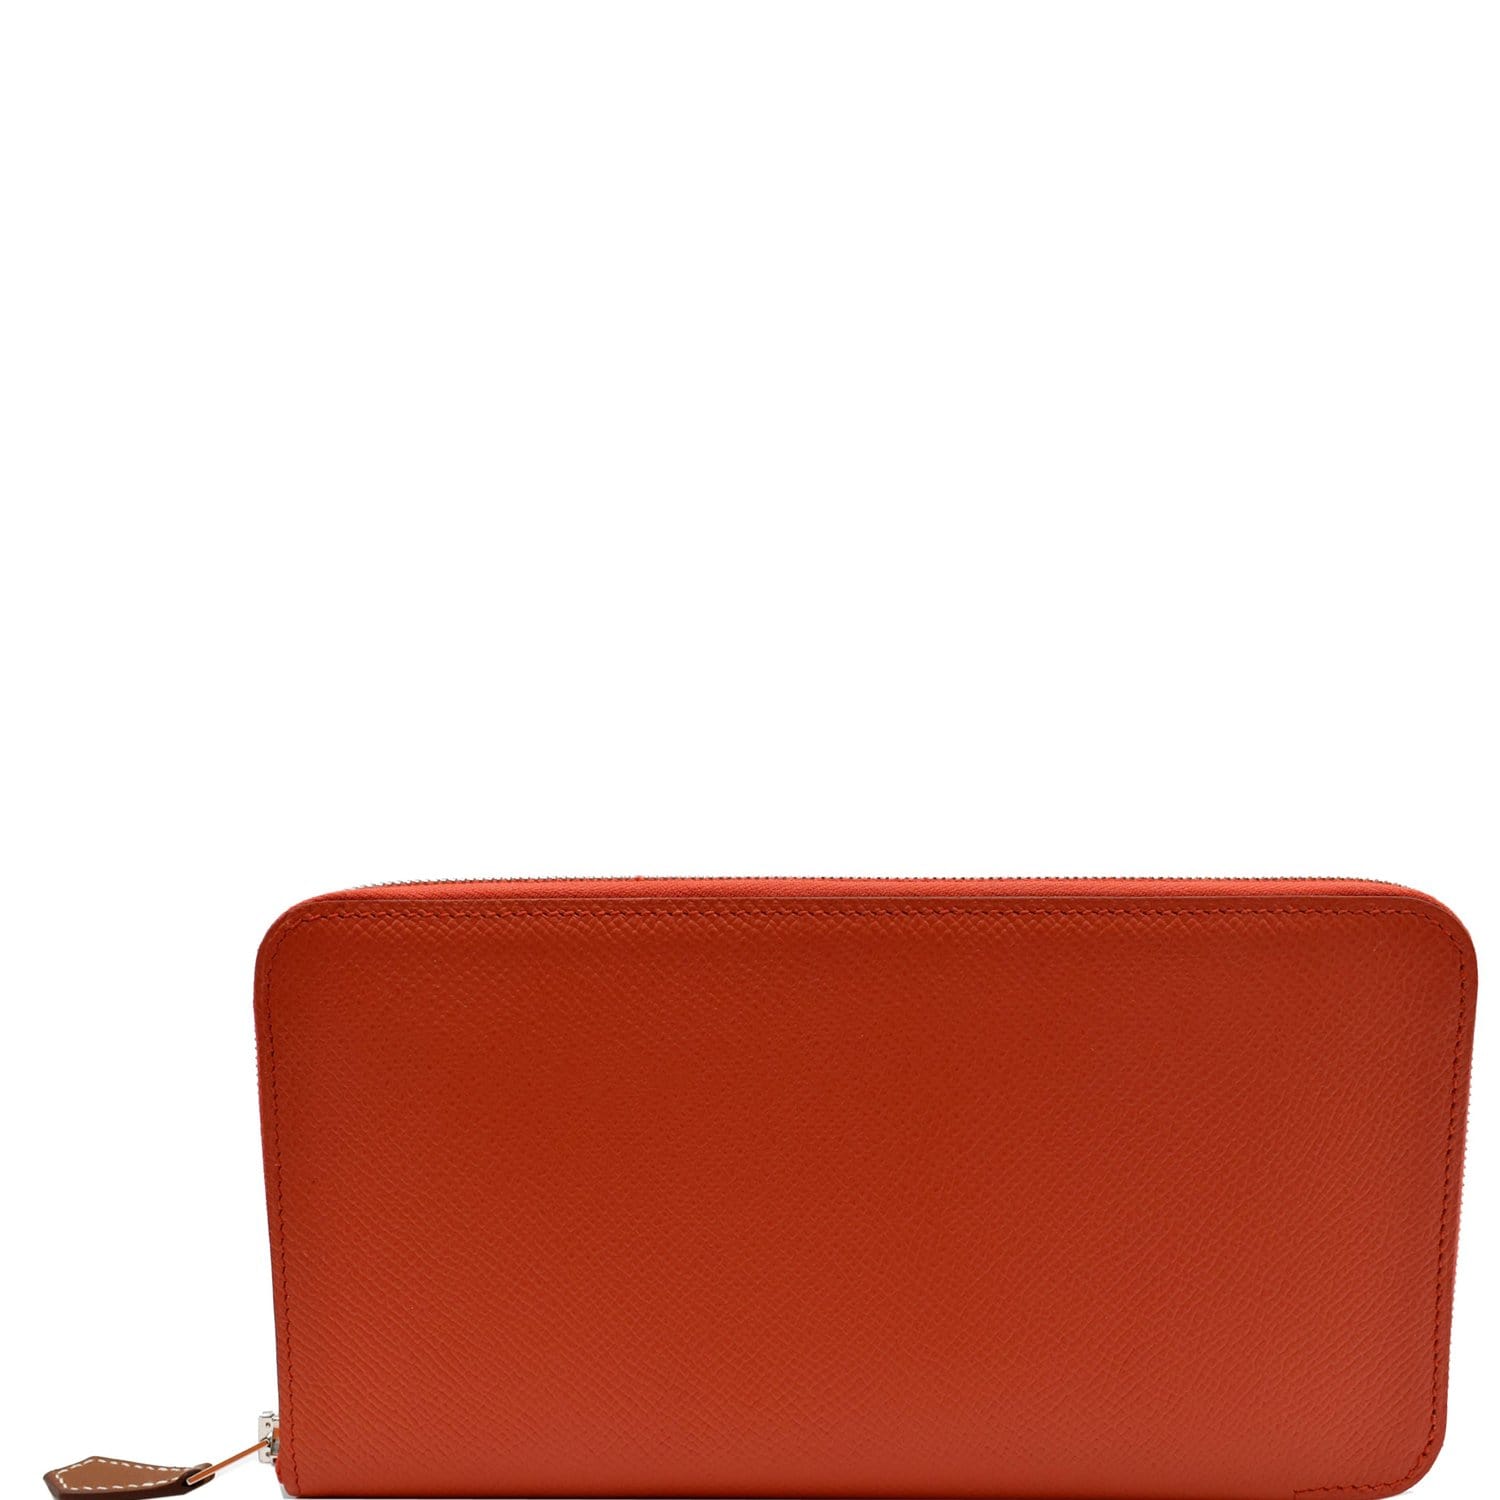 HERMES card Case Holder Epsom Leather Color Orange CLASSIC